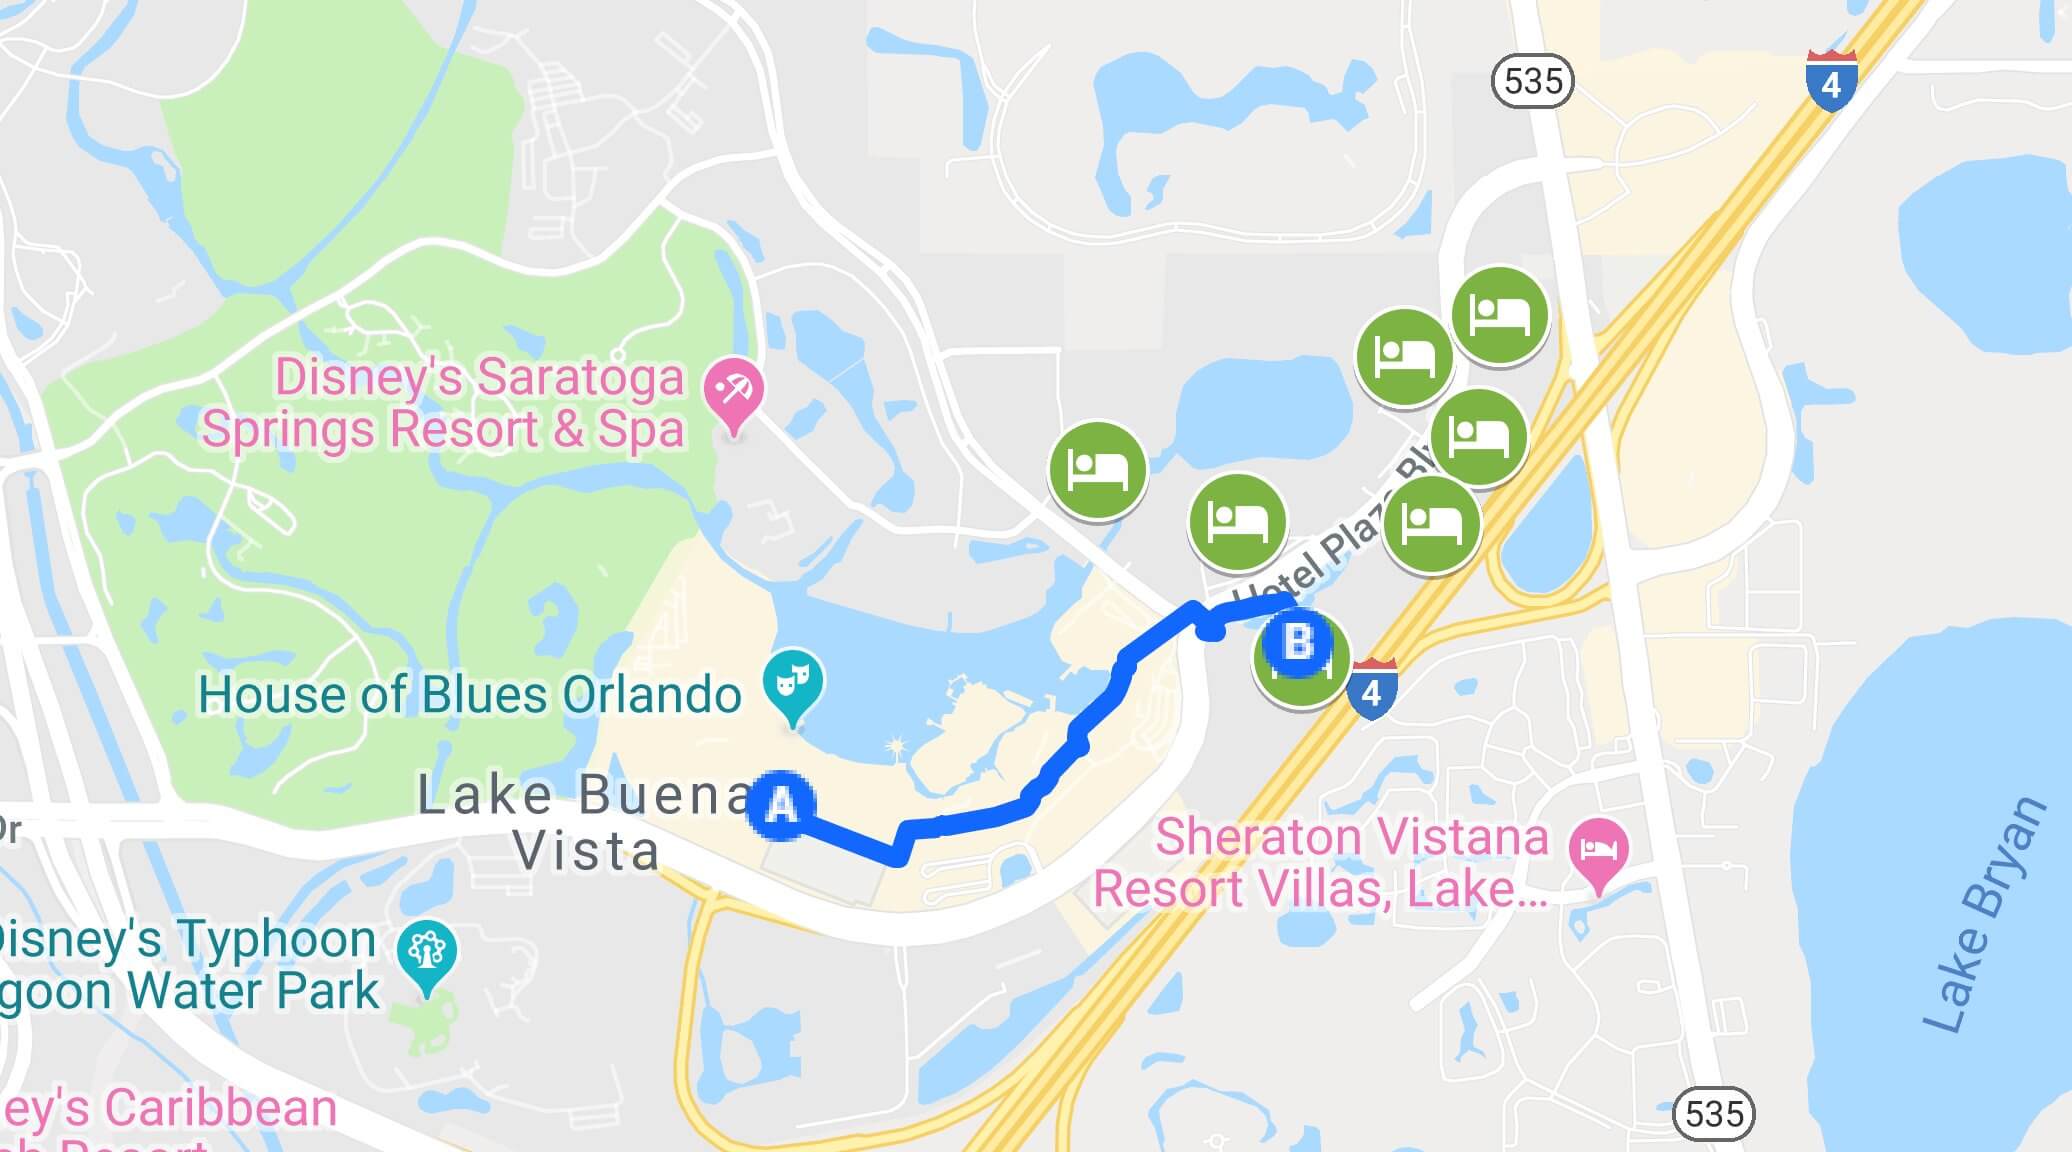 Mapa da localização dos hotéis parceiros no Disney Springs